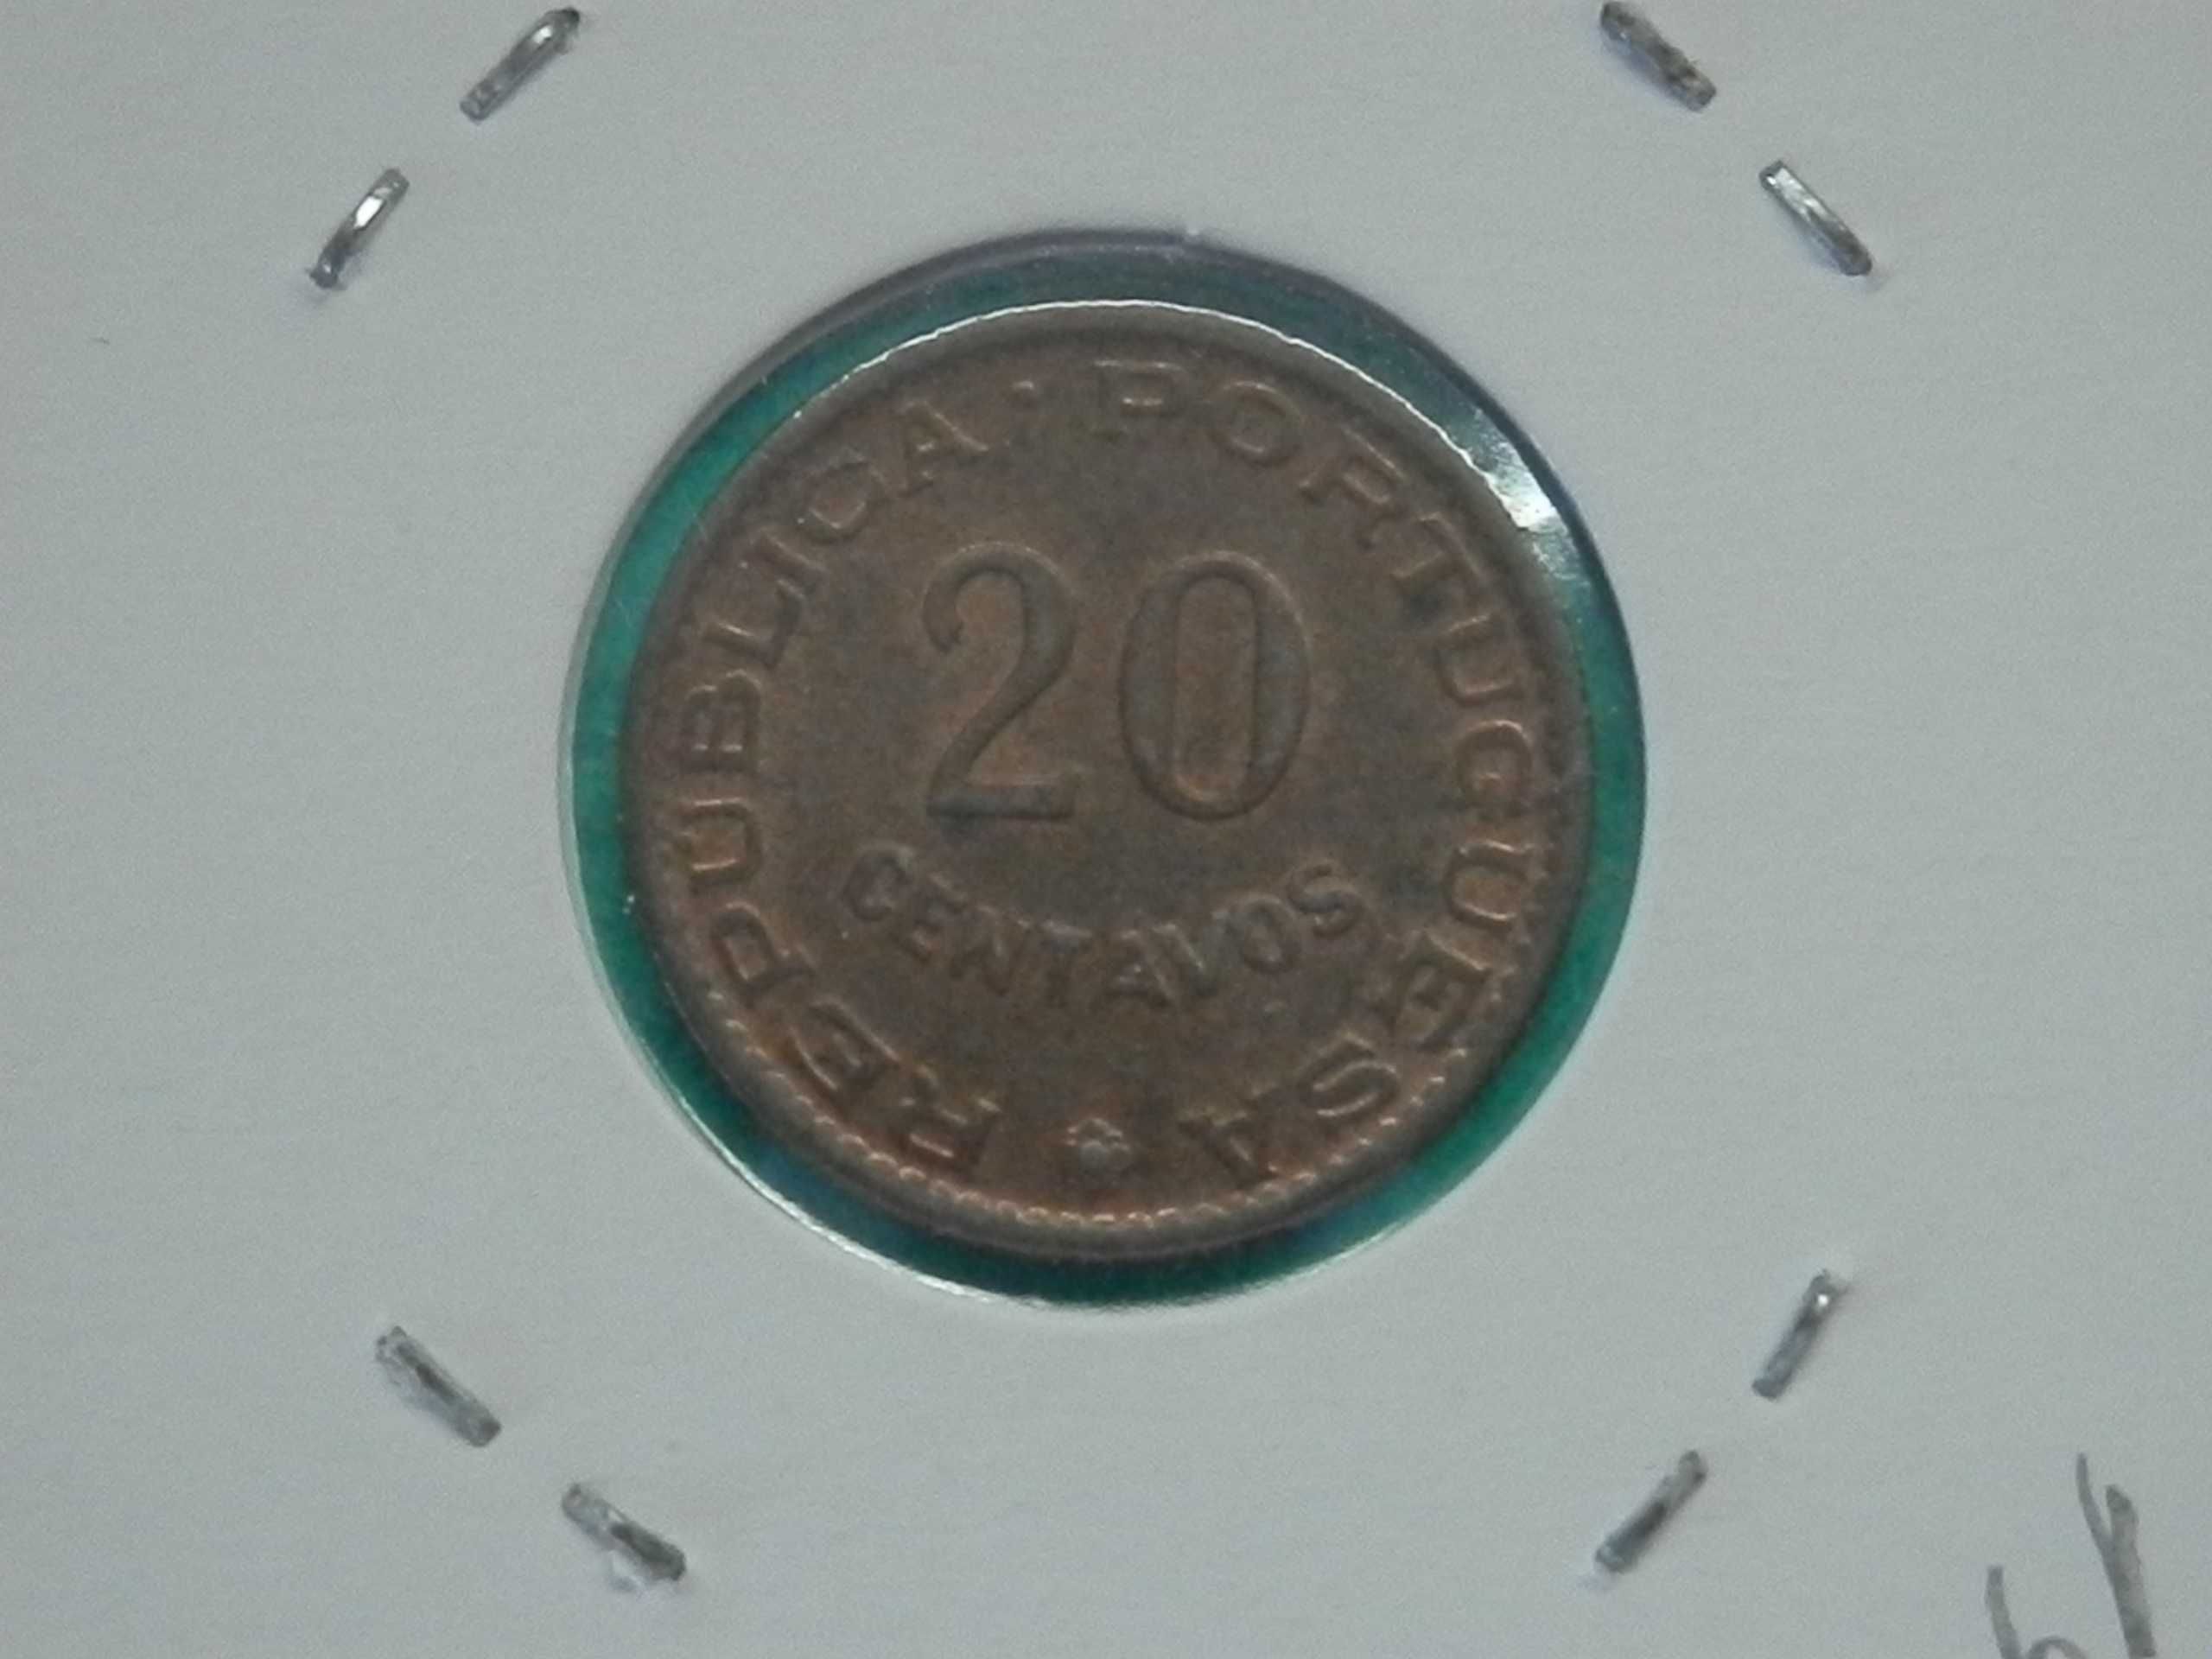 493 - Moçambique: 20 centavos 1961 bronze, por 2,00